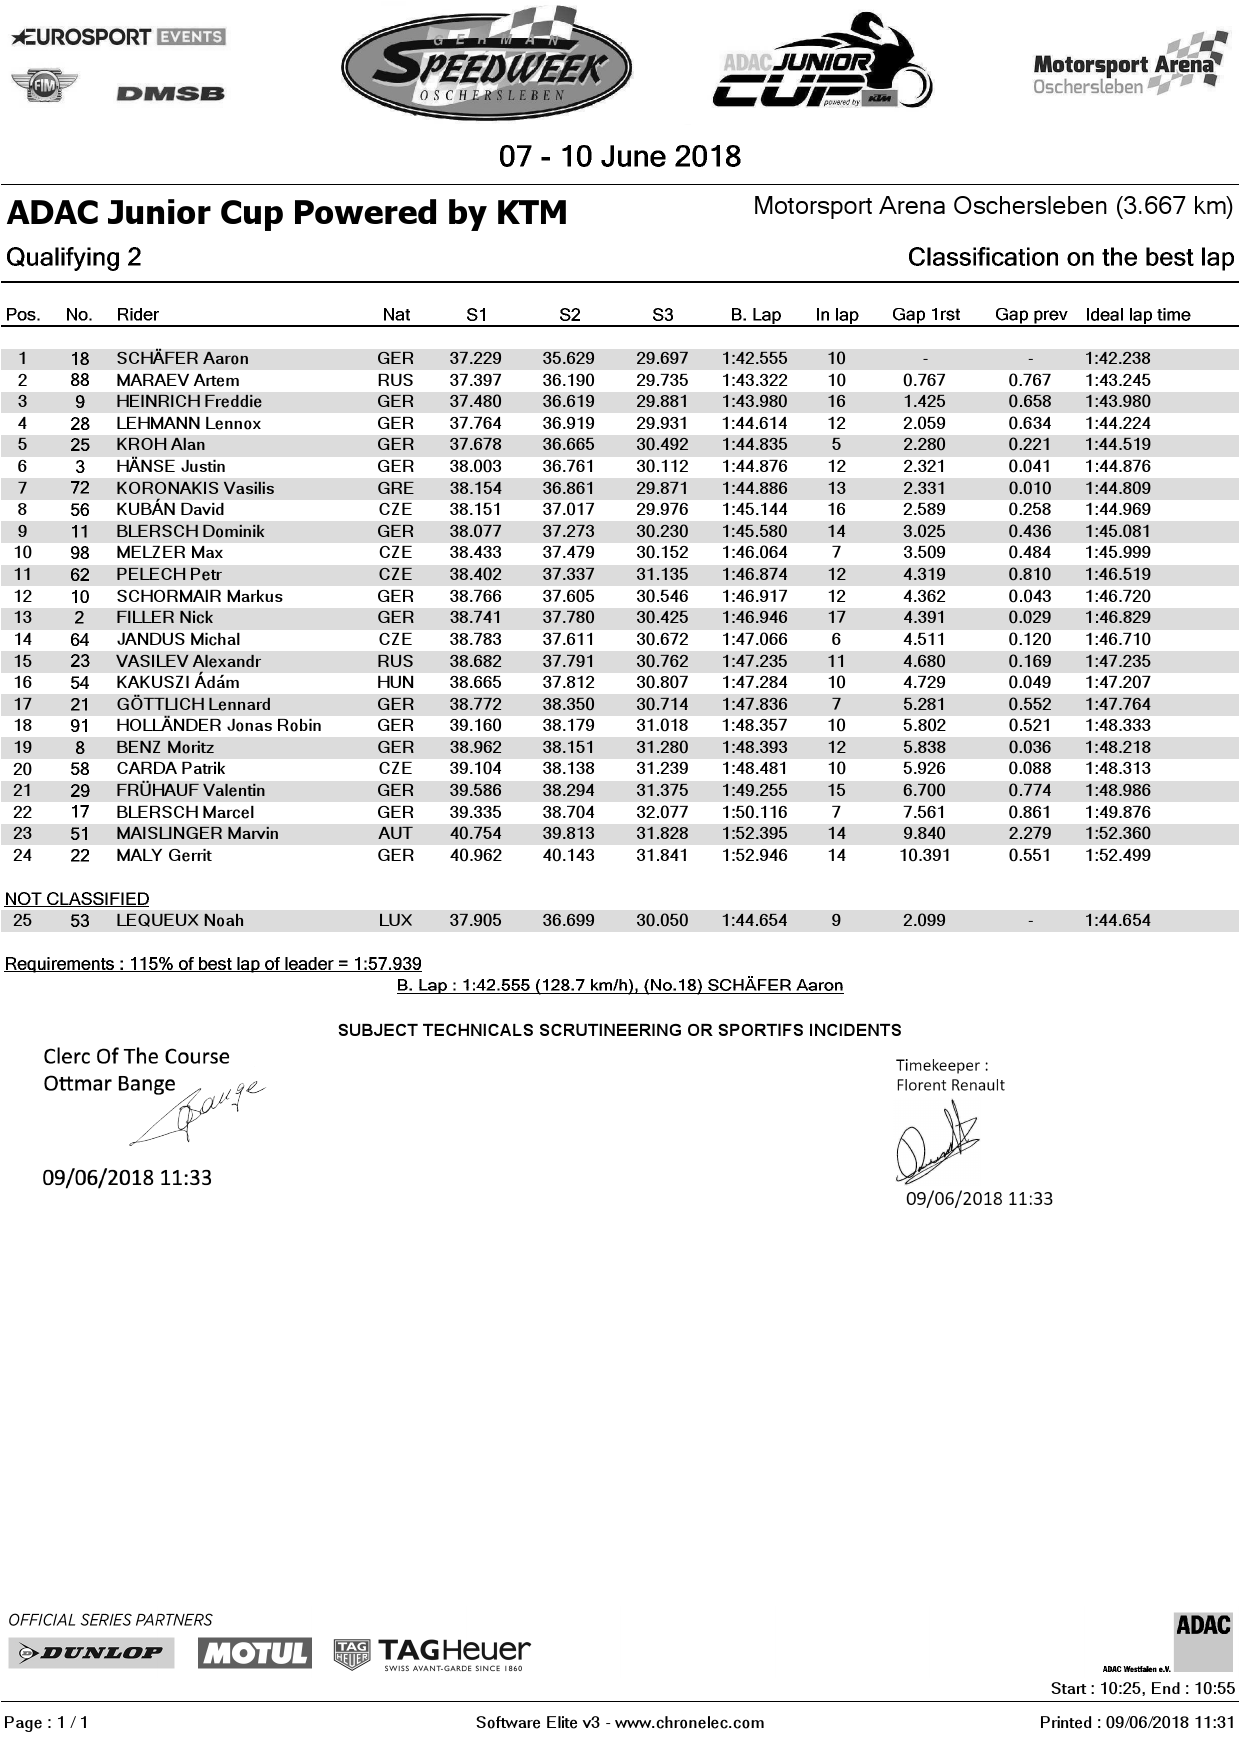 Результаты 2-й квалификации ADAC Junior Cup, KTM, Oschersleben